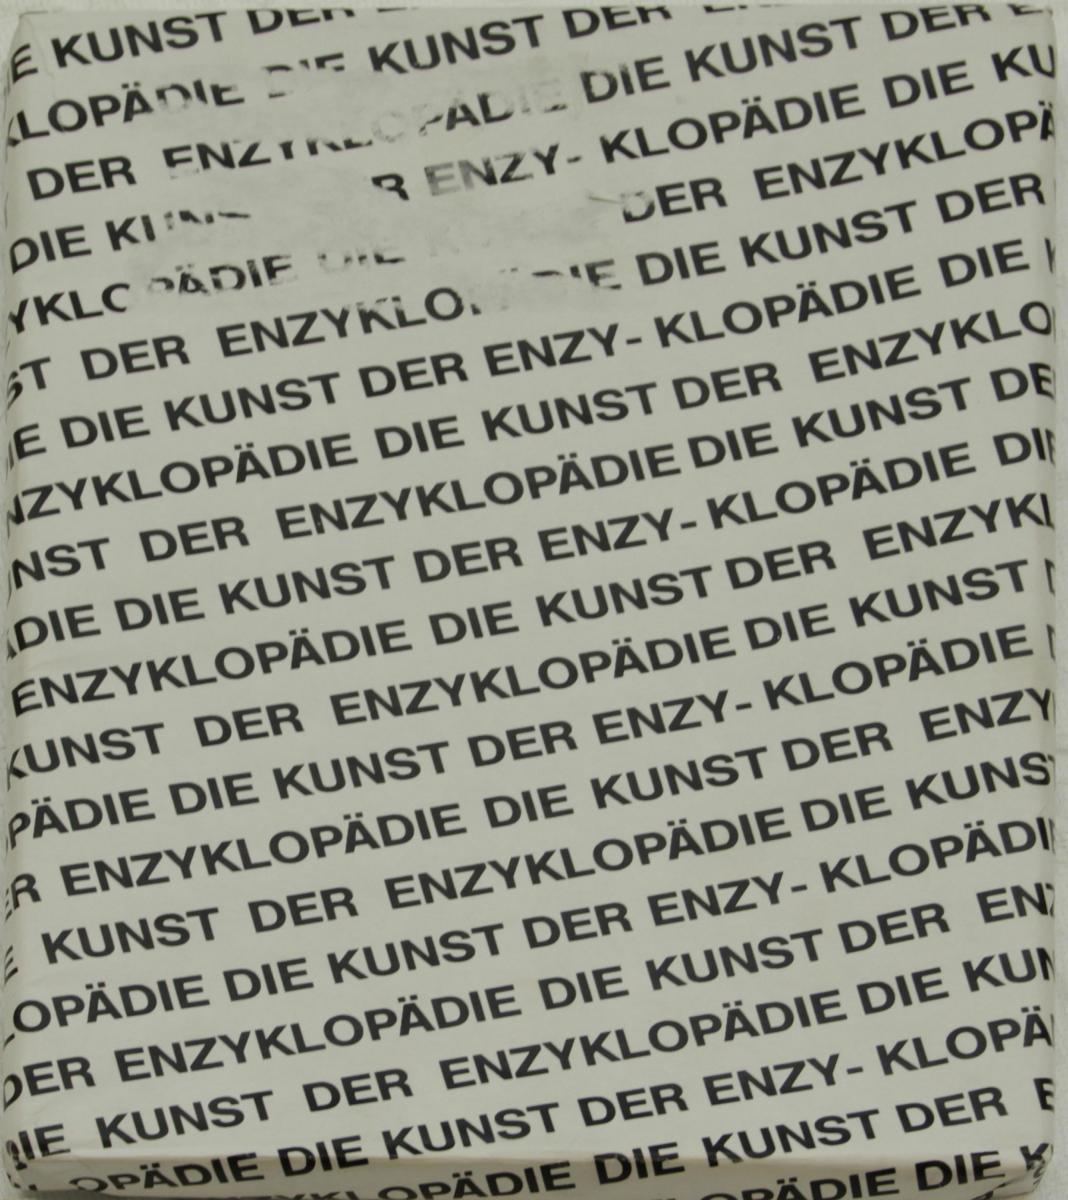 Heimo Zobernig - Die Kunst der Enzyklopaedie, 56801-11693, Van Ham Kunstauktionen